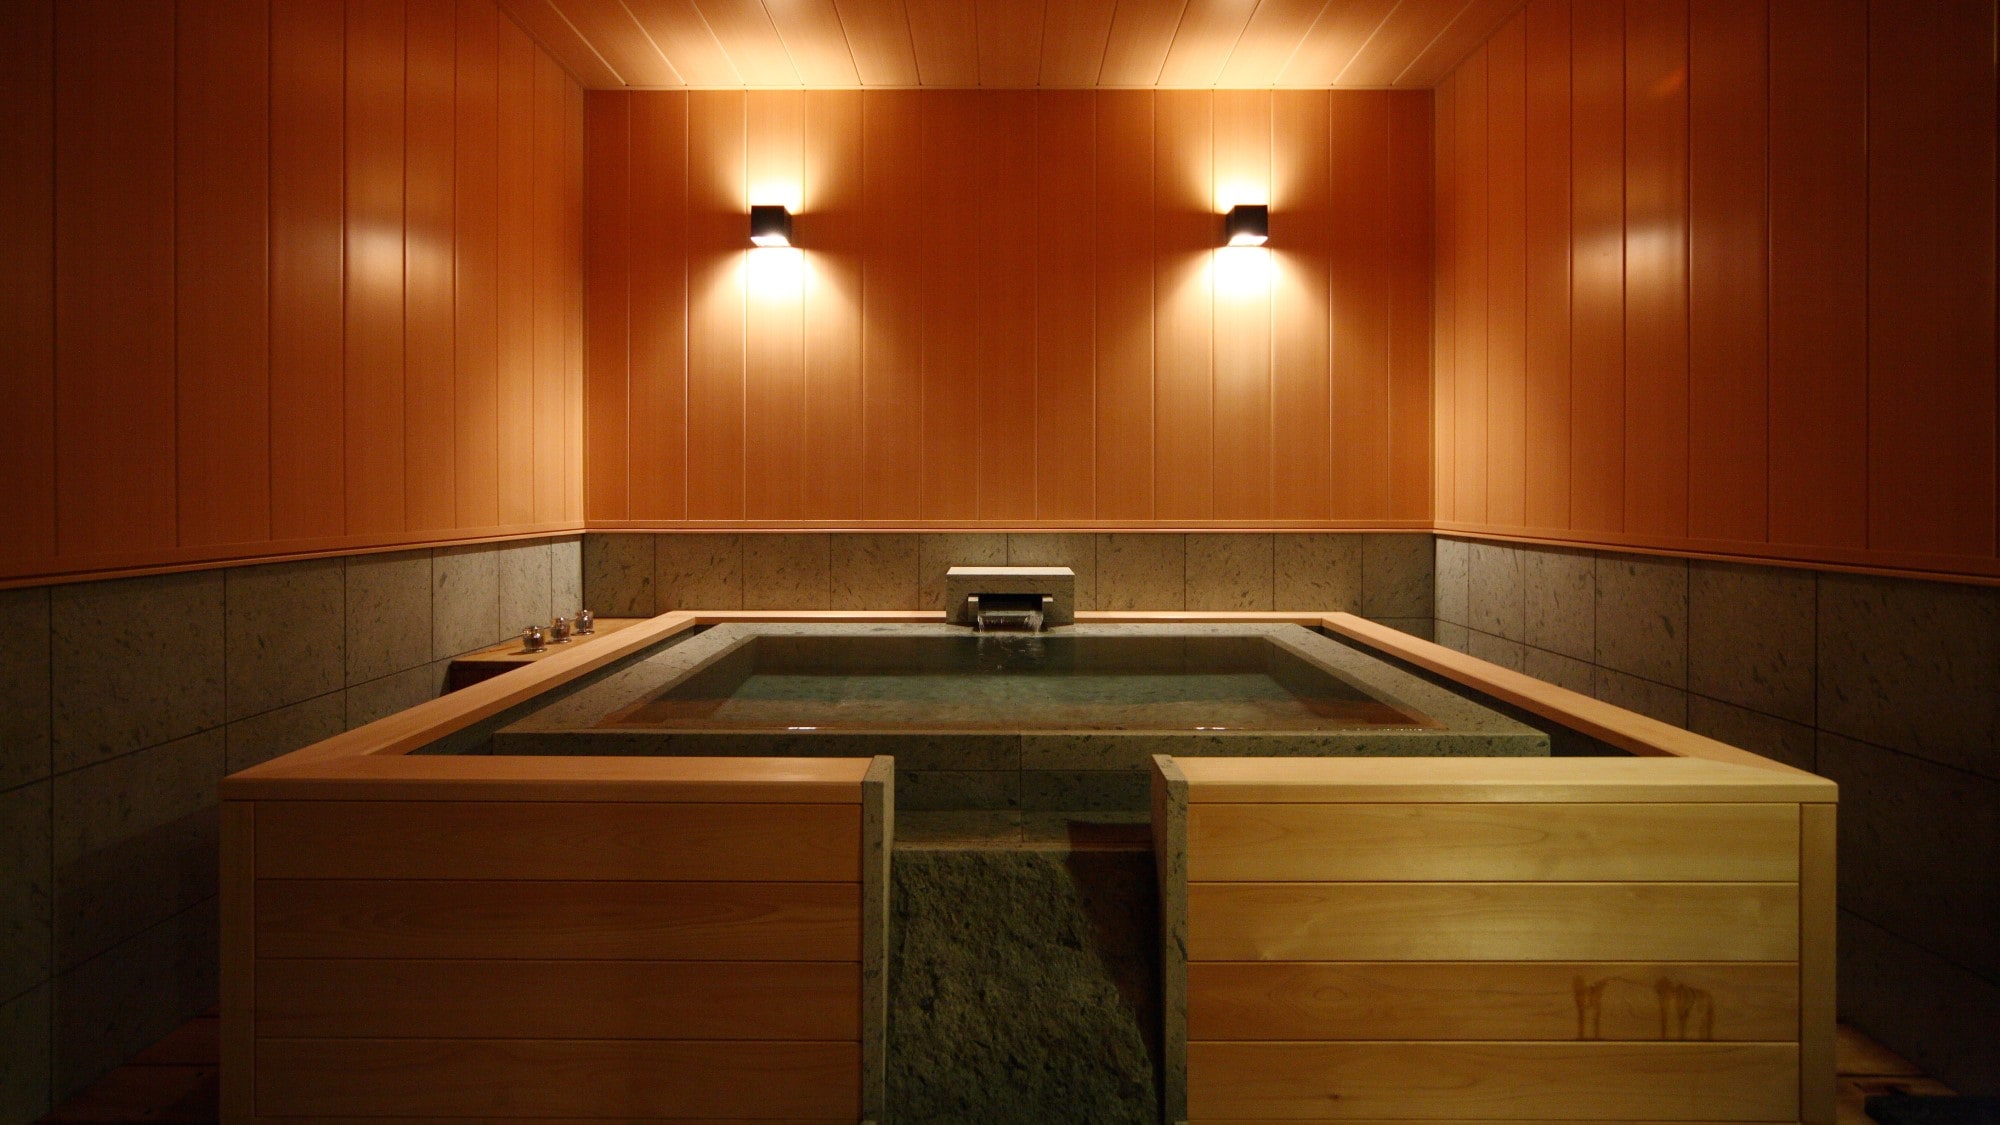 ☆ 水療套房“Kikumanyo”平面型室內家庭浴室形象